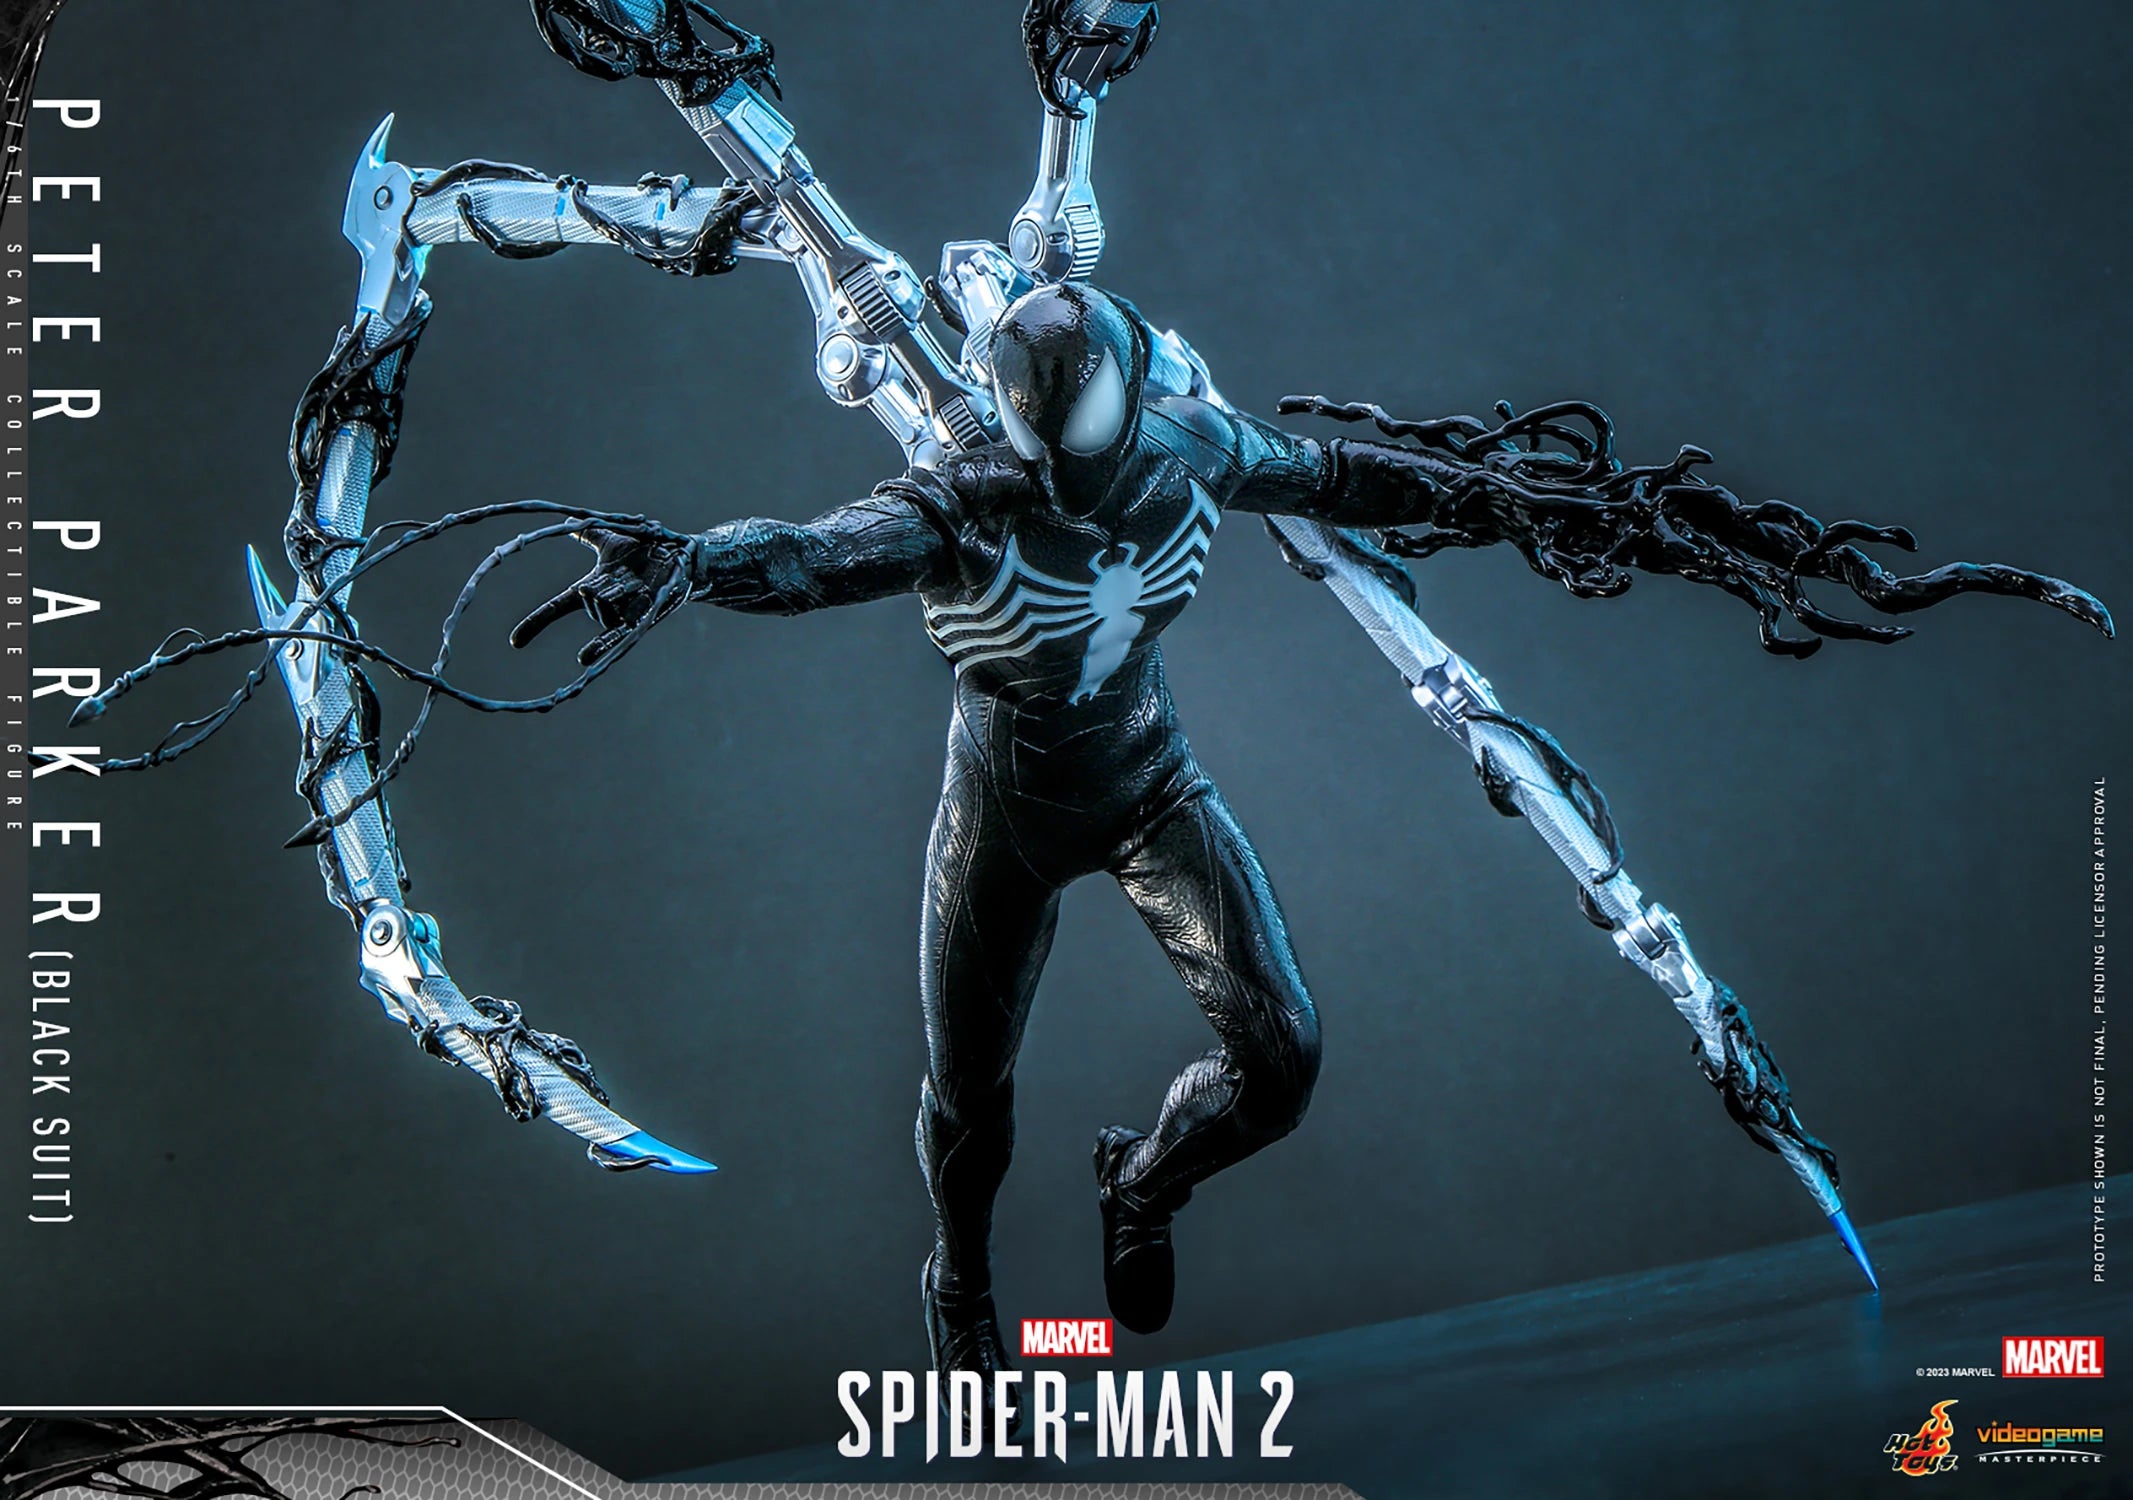 Marvel's Spider-Man 2 ¿vale la pena?: reseña, review, precio y